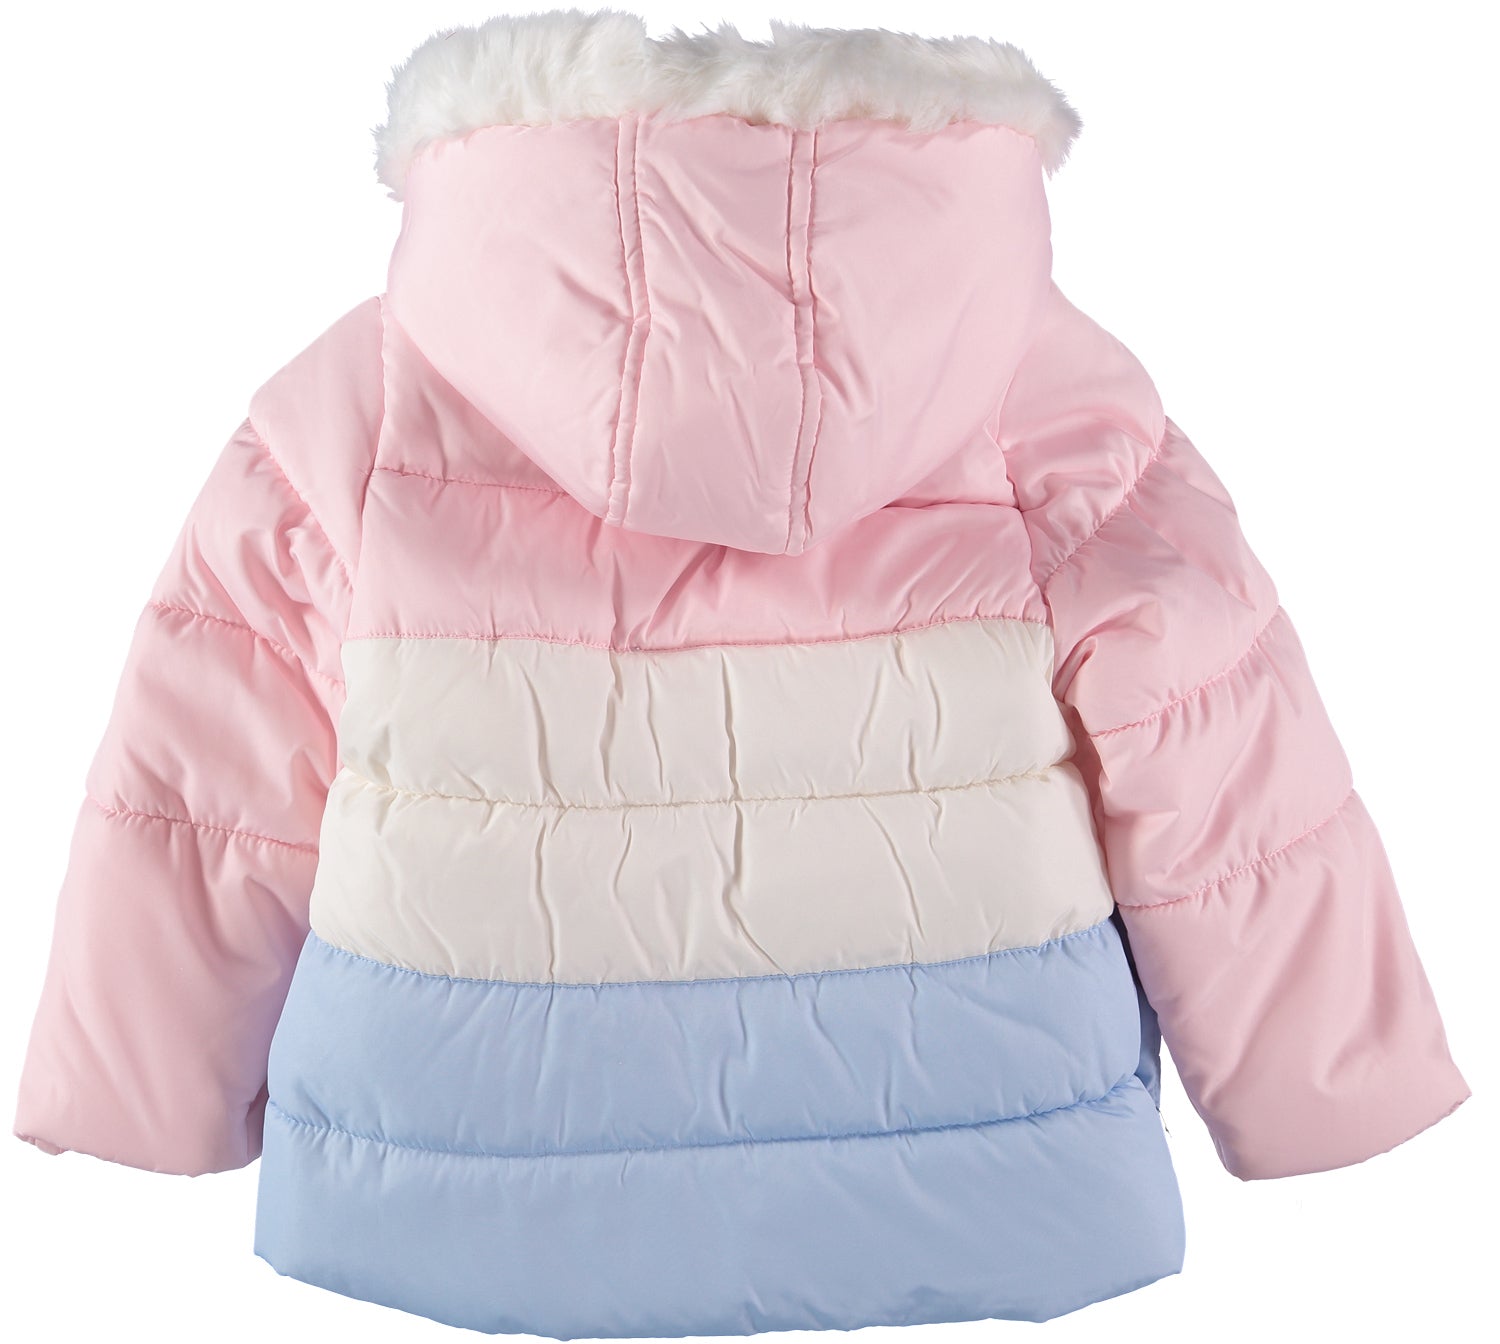 Carters Girls 2T-4T Colorblock Snowsuit